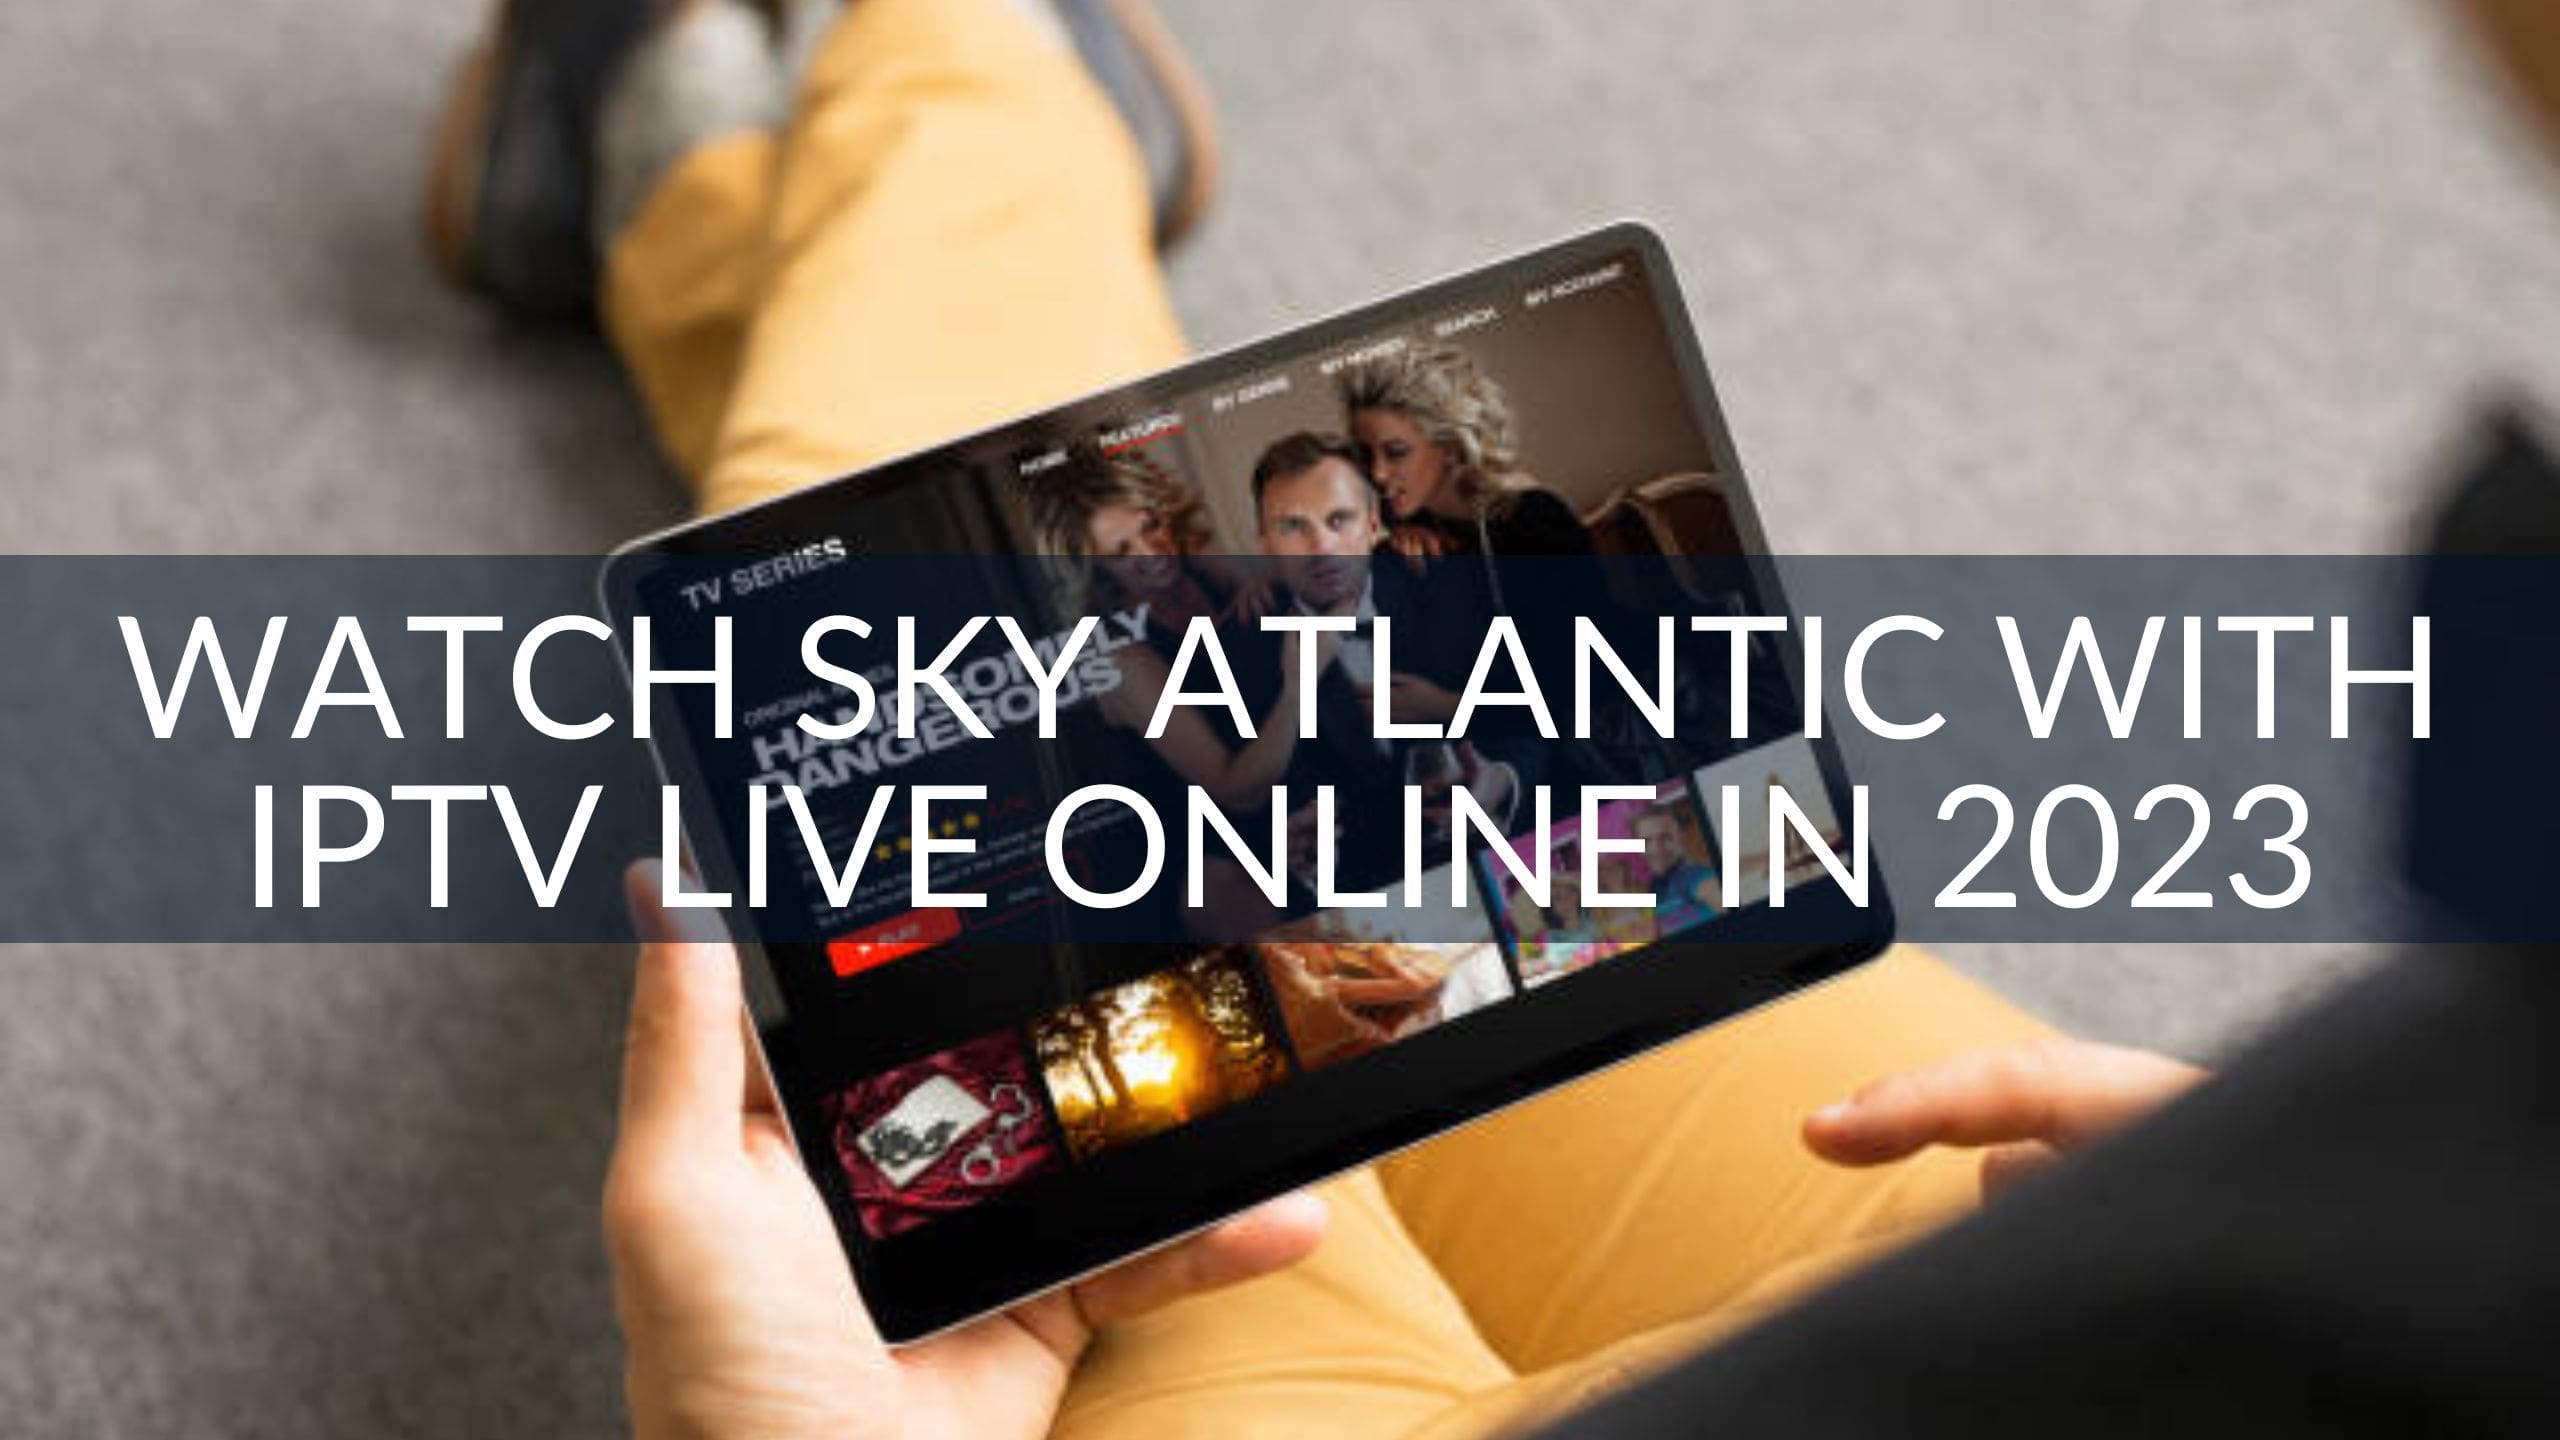 Watch Sky Atlantic With IPTV Live Online in 2023